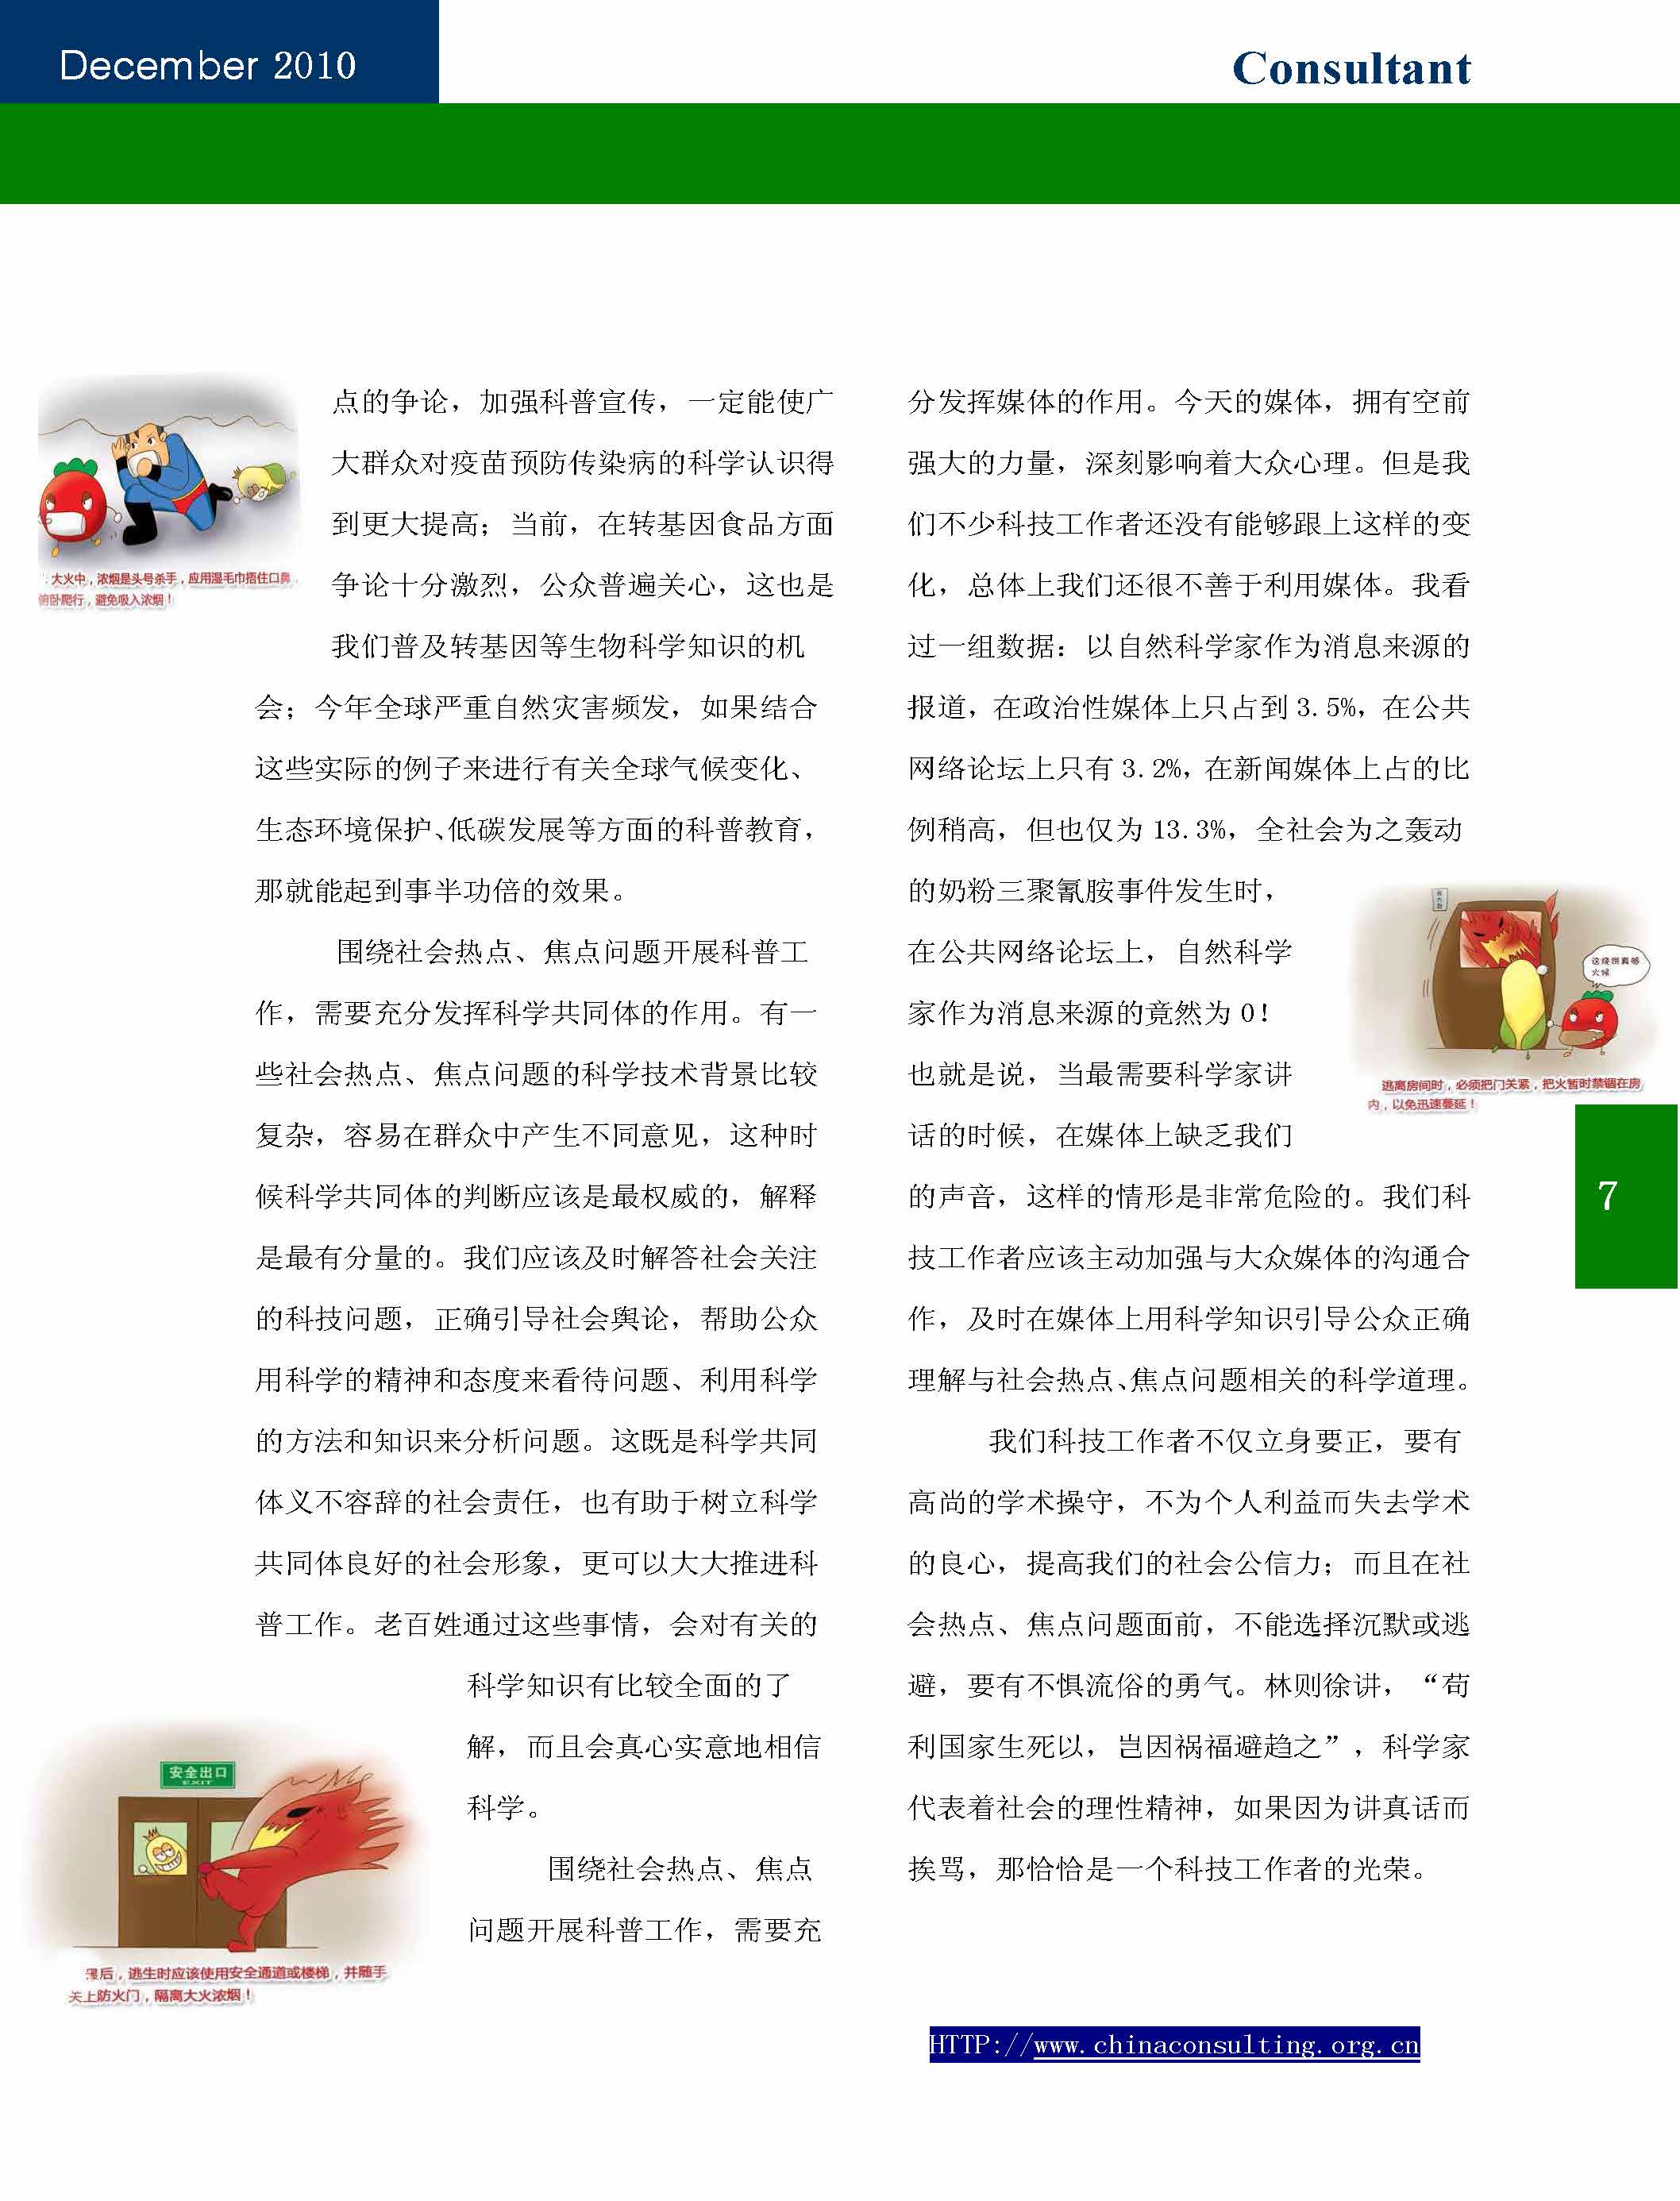 13中国科技咨询协会第十三期会刊_页面_09.jpg